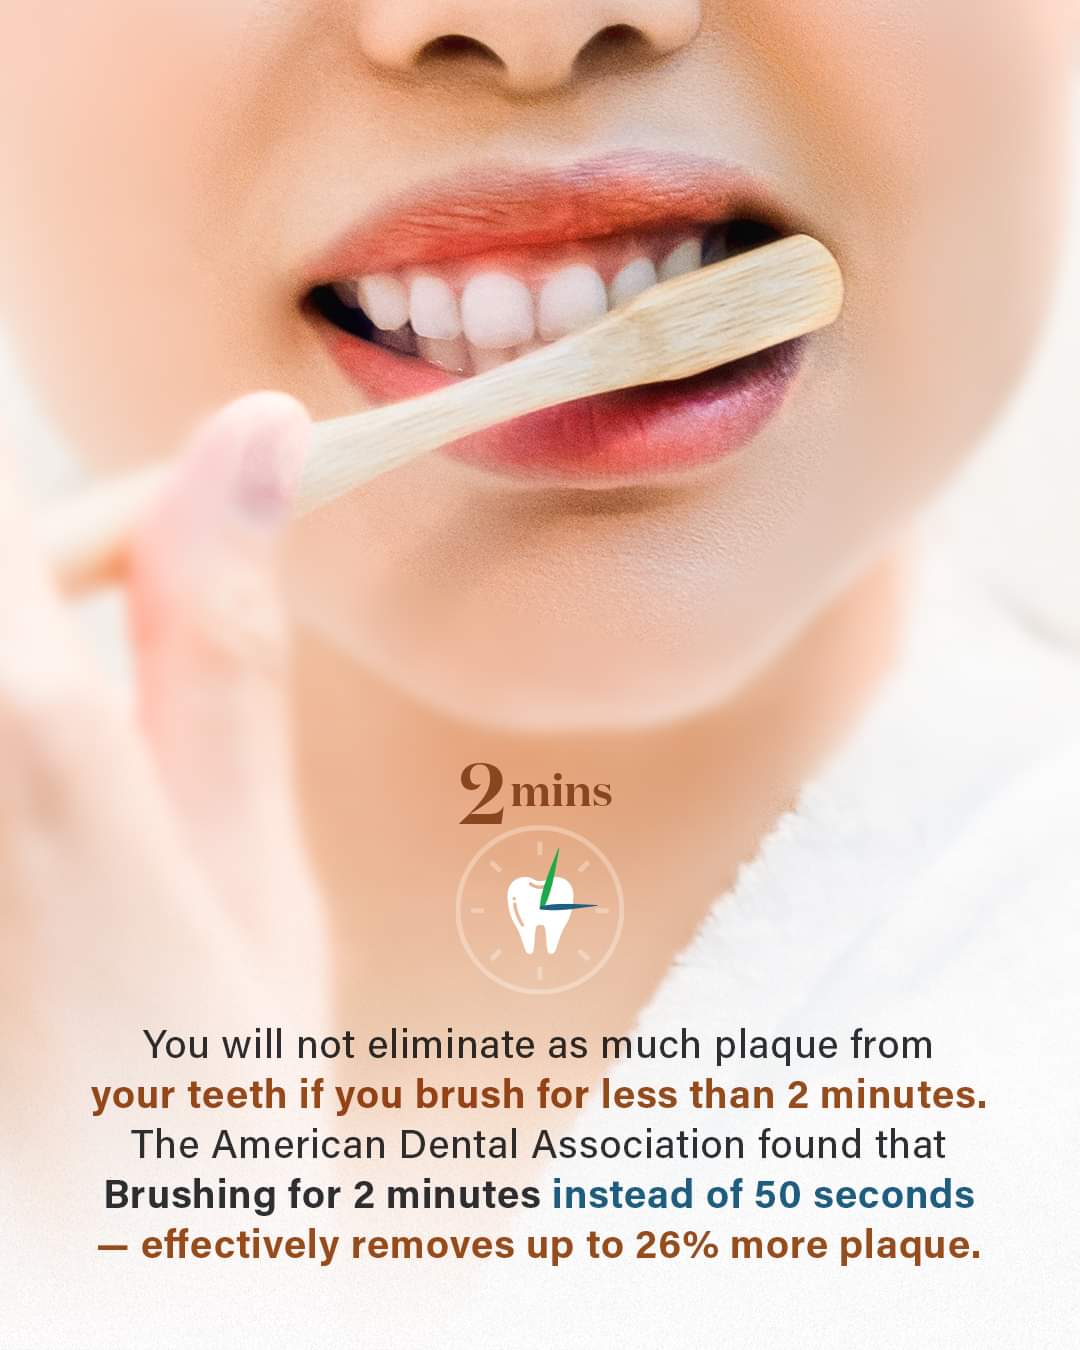 Koreisu Toothpaste (Fluoride Free) - Family Toothpaste / Charcoal Whitening Toothpaste 100g